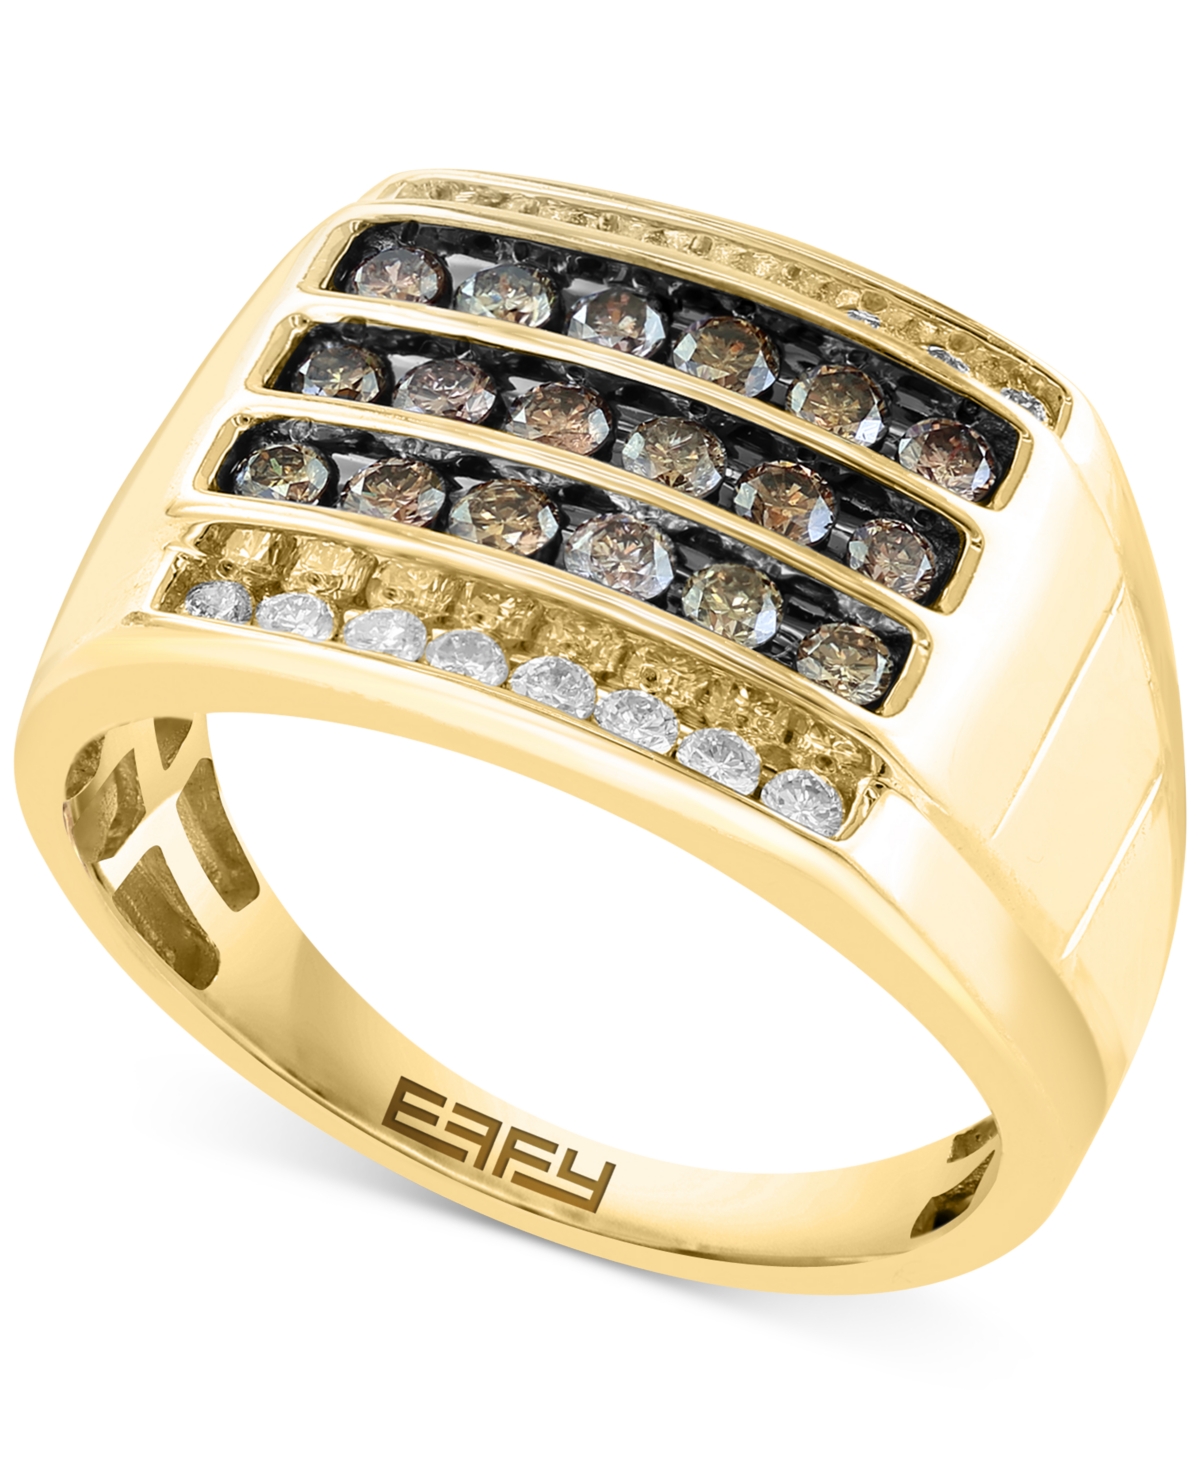 Effy Men's Espresso Diamond (5/8 ct. t.w.) & White Diamond (1/3 ct. t.w.) Ring in 14k Gold - Gold